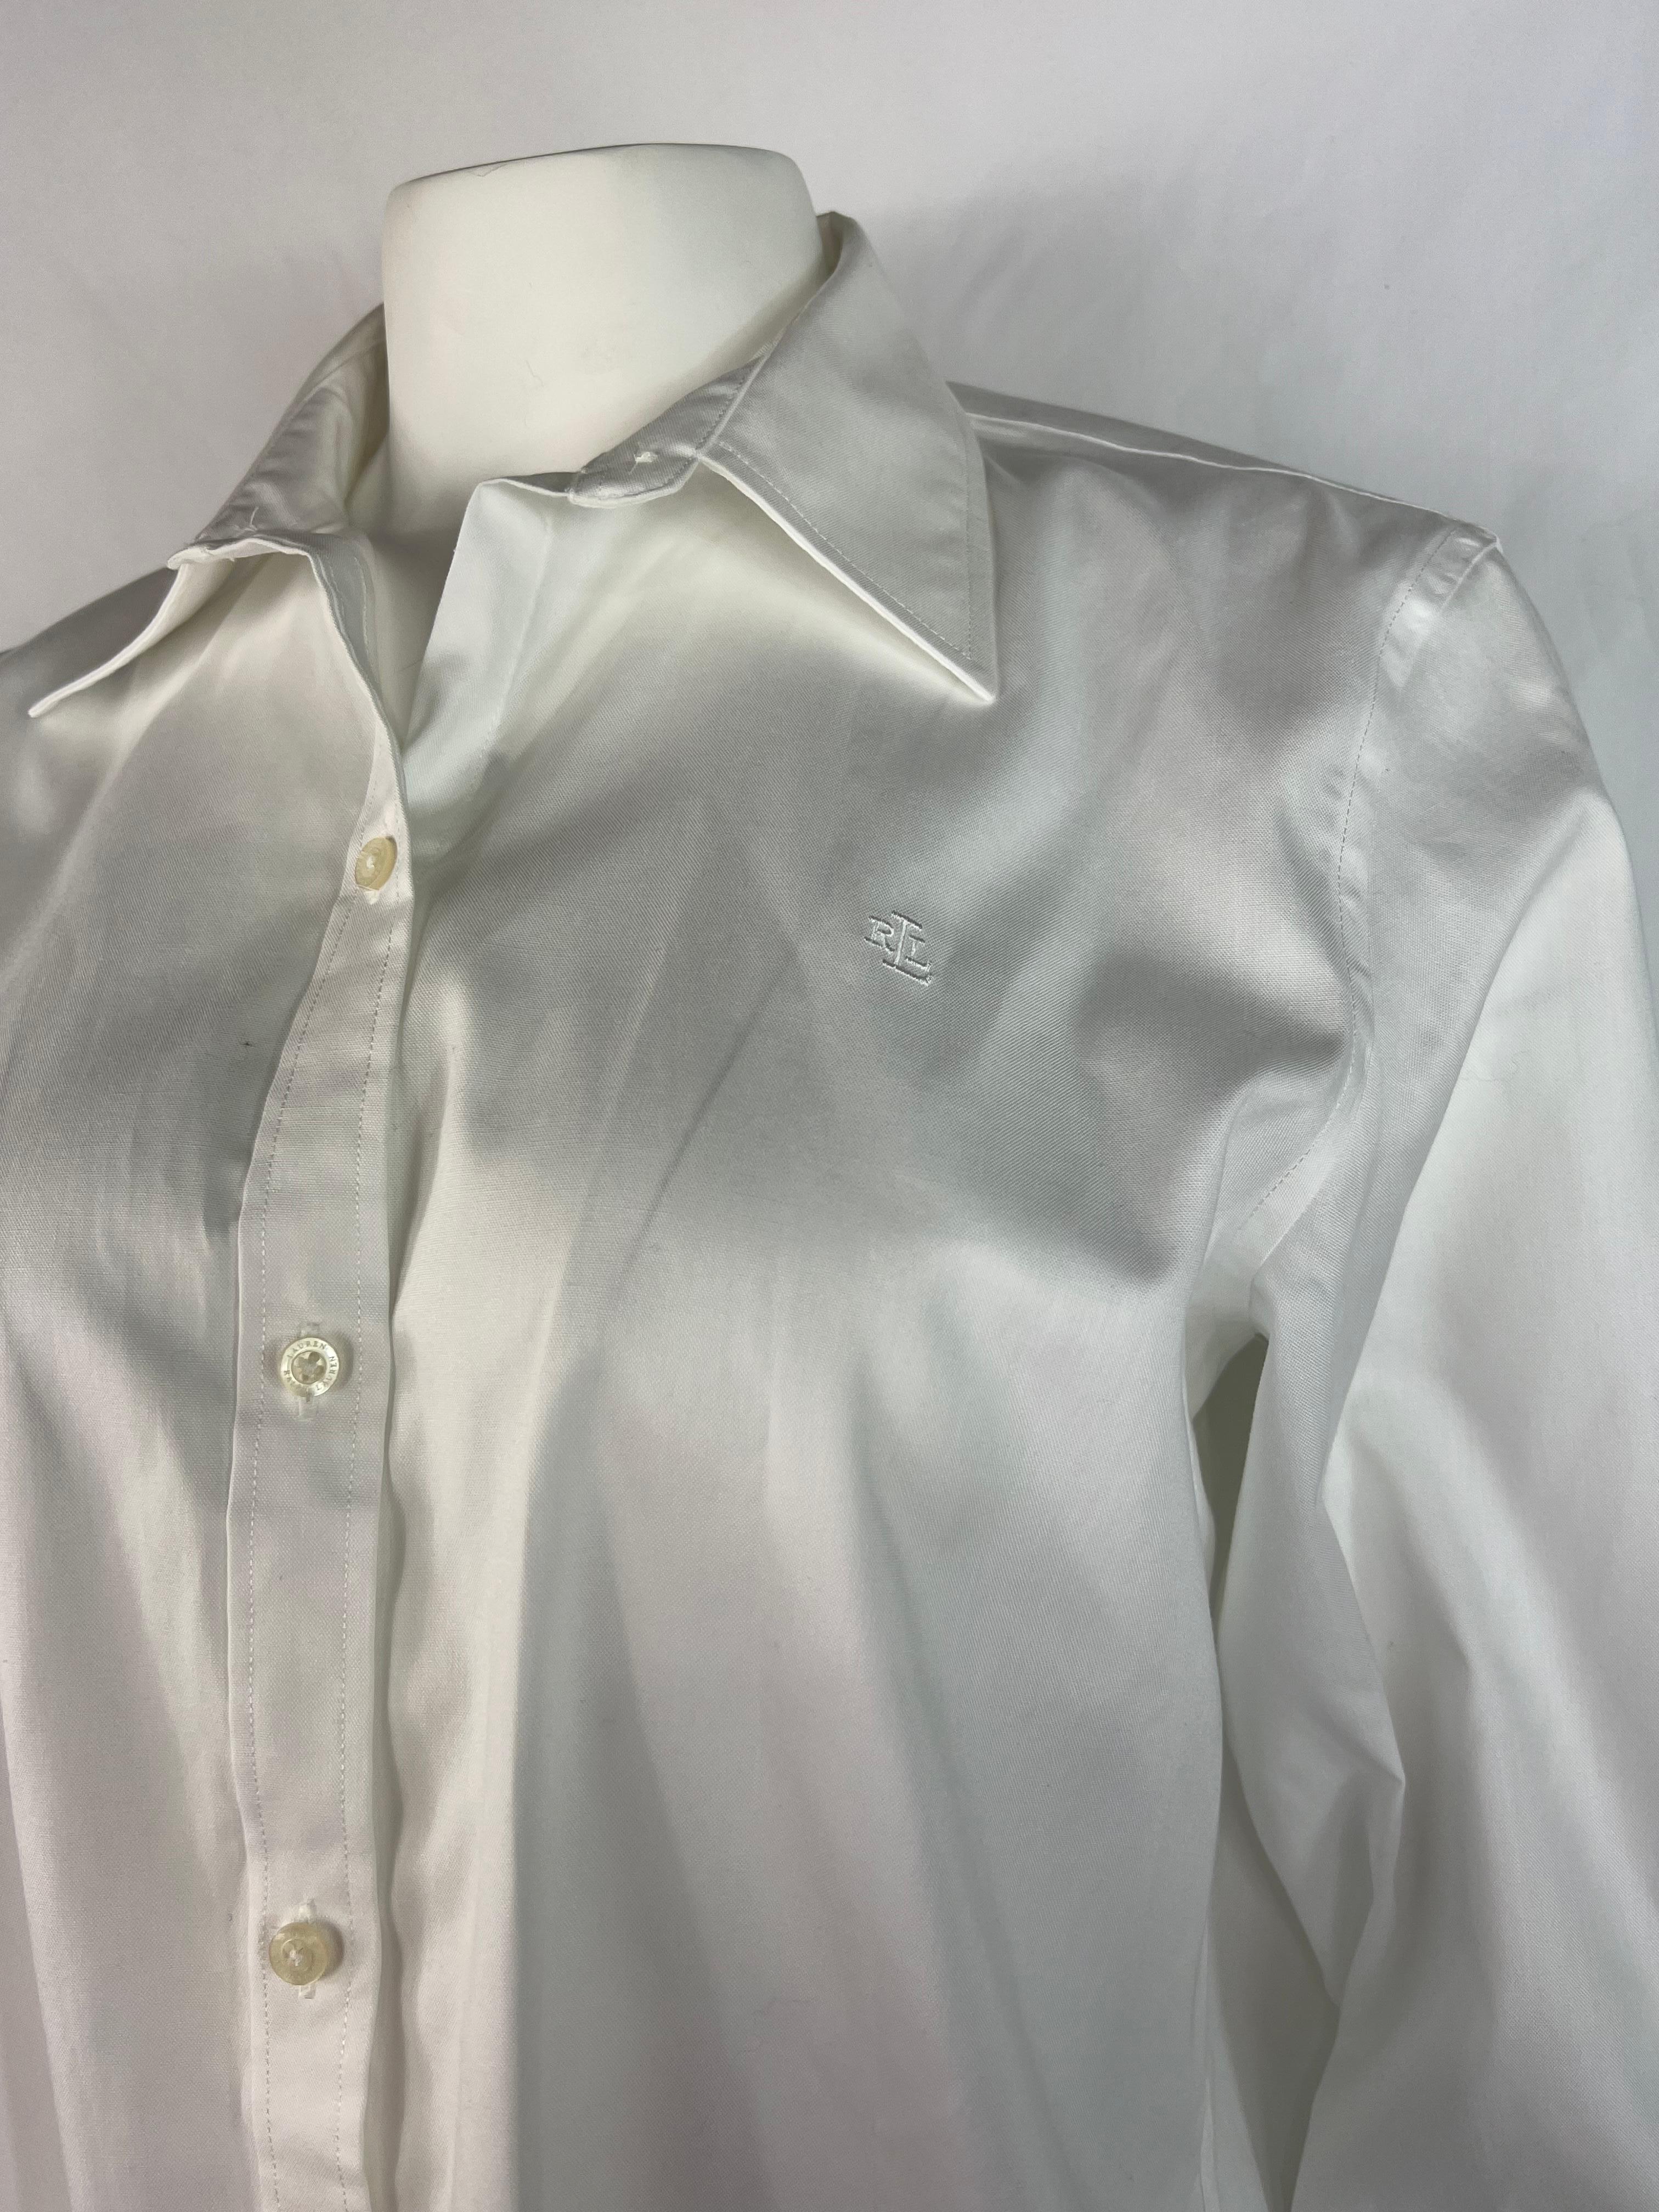 Einzelheiten zum Produkt:

Die Bluse hat einen Kragen, einen Knopfverschluss vorne und ein Knopfdetail an den Ärmeln.